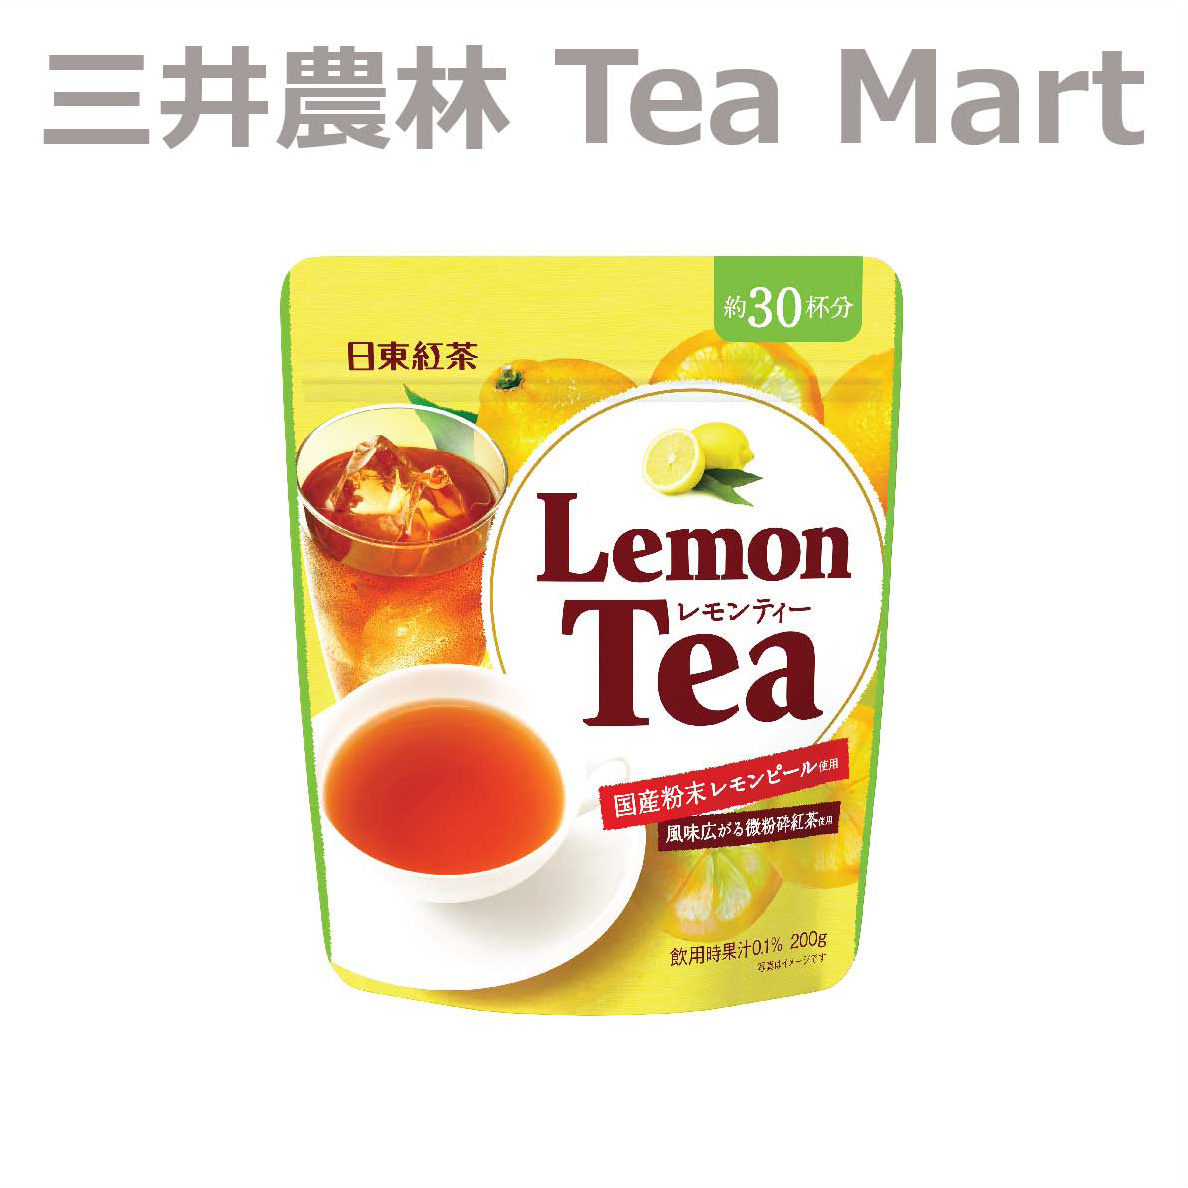 楽天市場 日東紅茶 アップルティー 0g 日東紅茶の 三井農林 Tea Mart